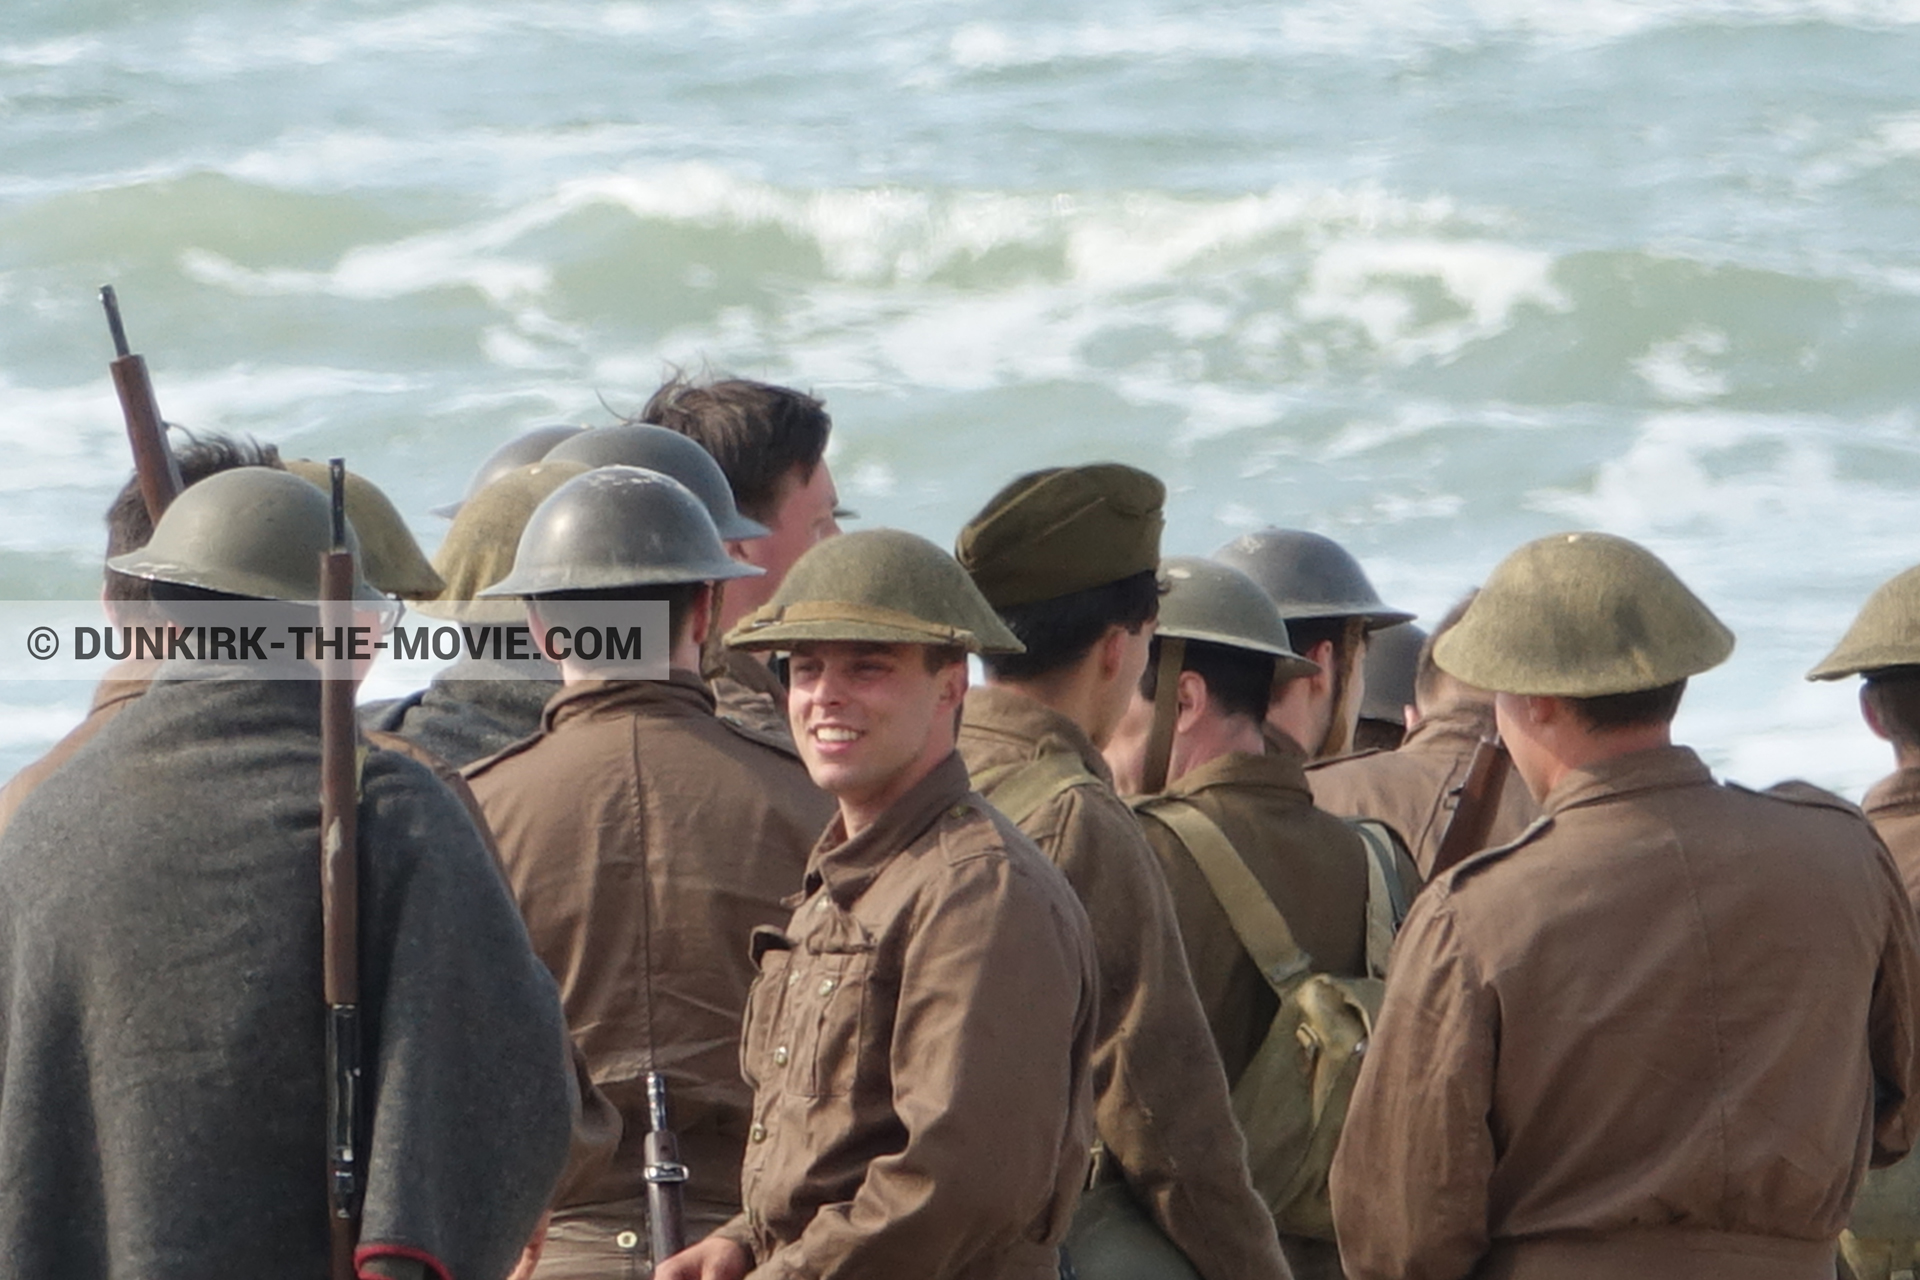 Photo avec figurants, mer agitée,  des dessous du Film Dunkerque de Nolan